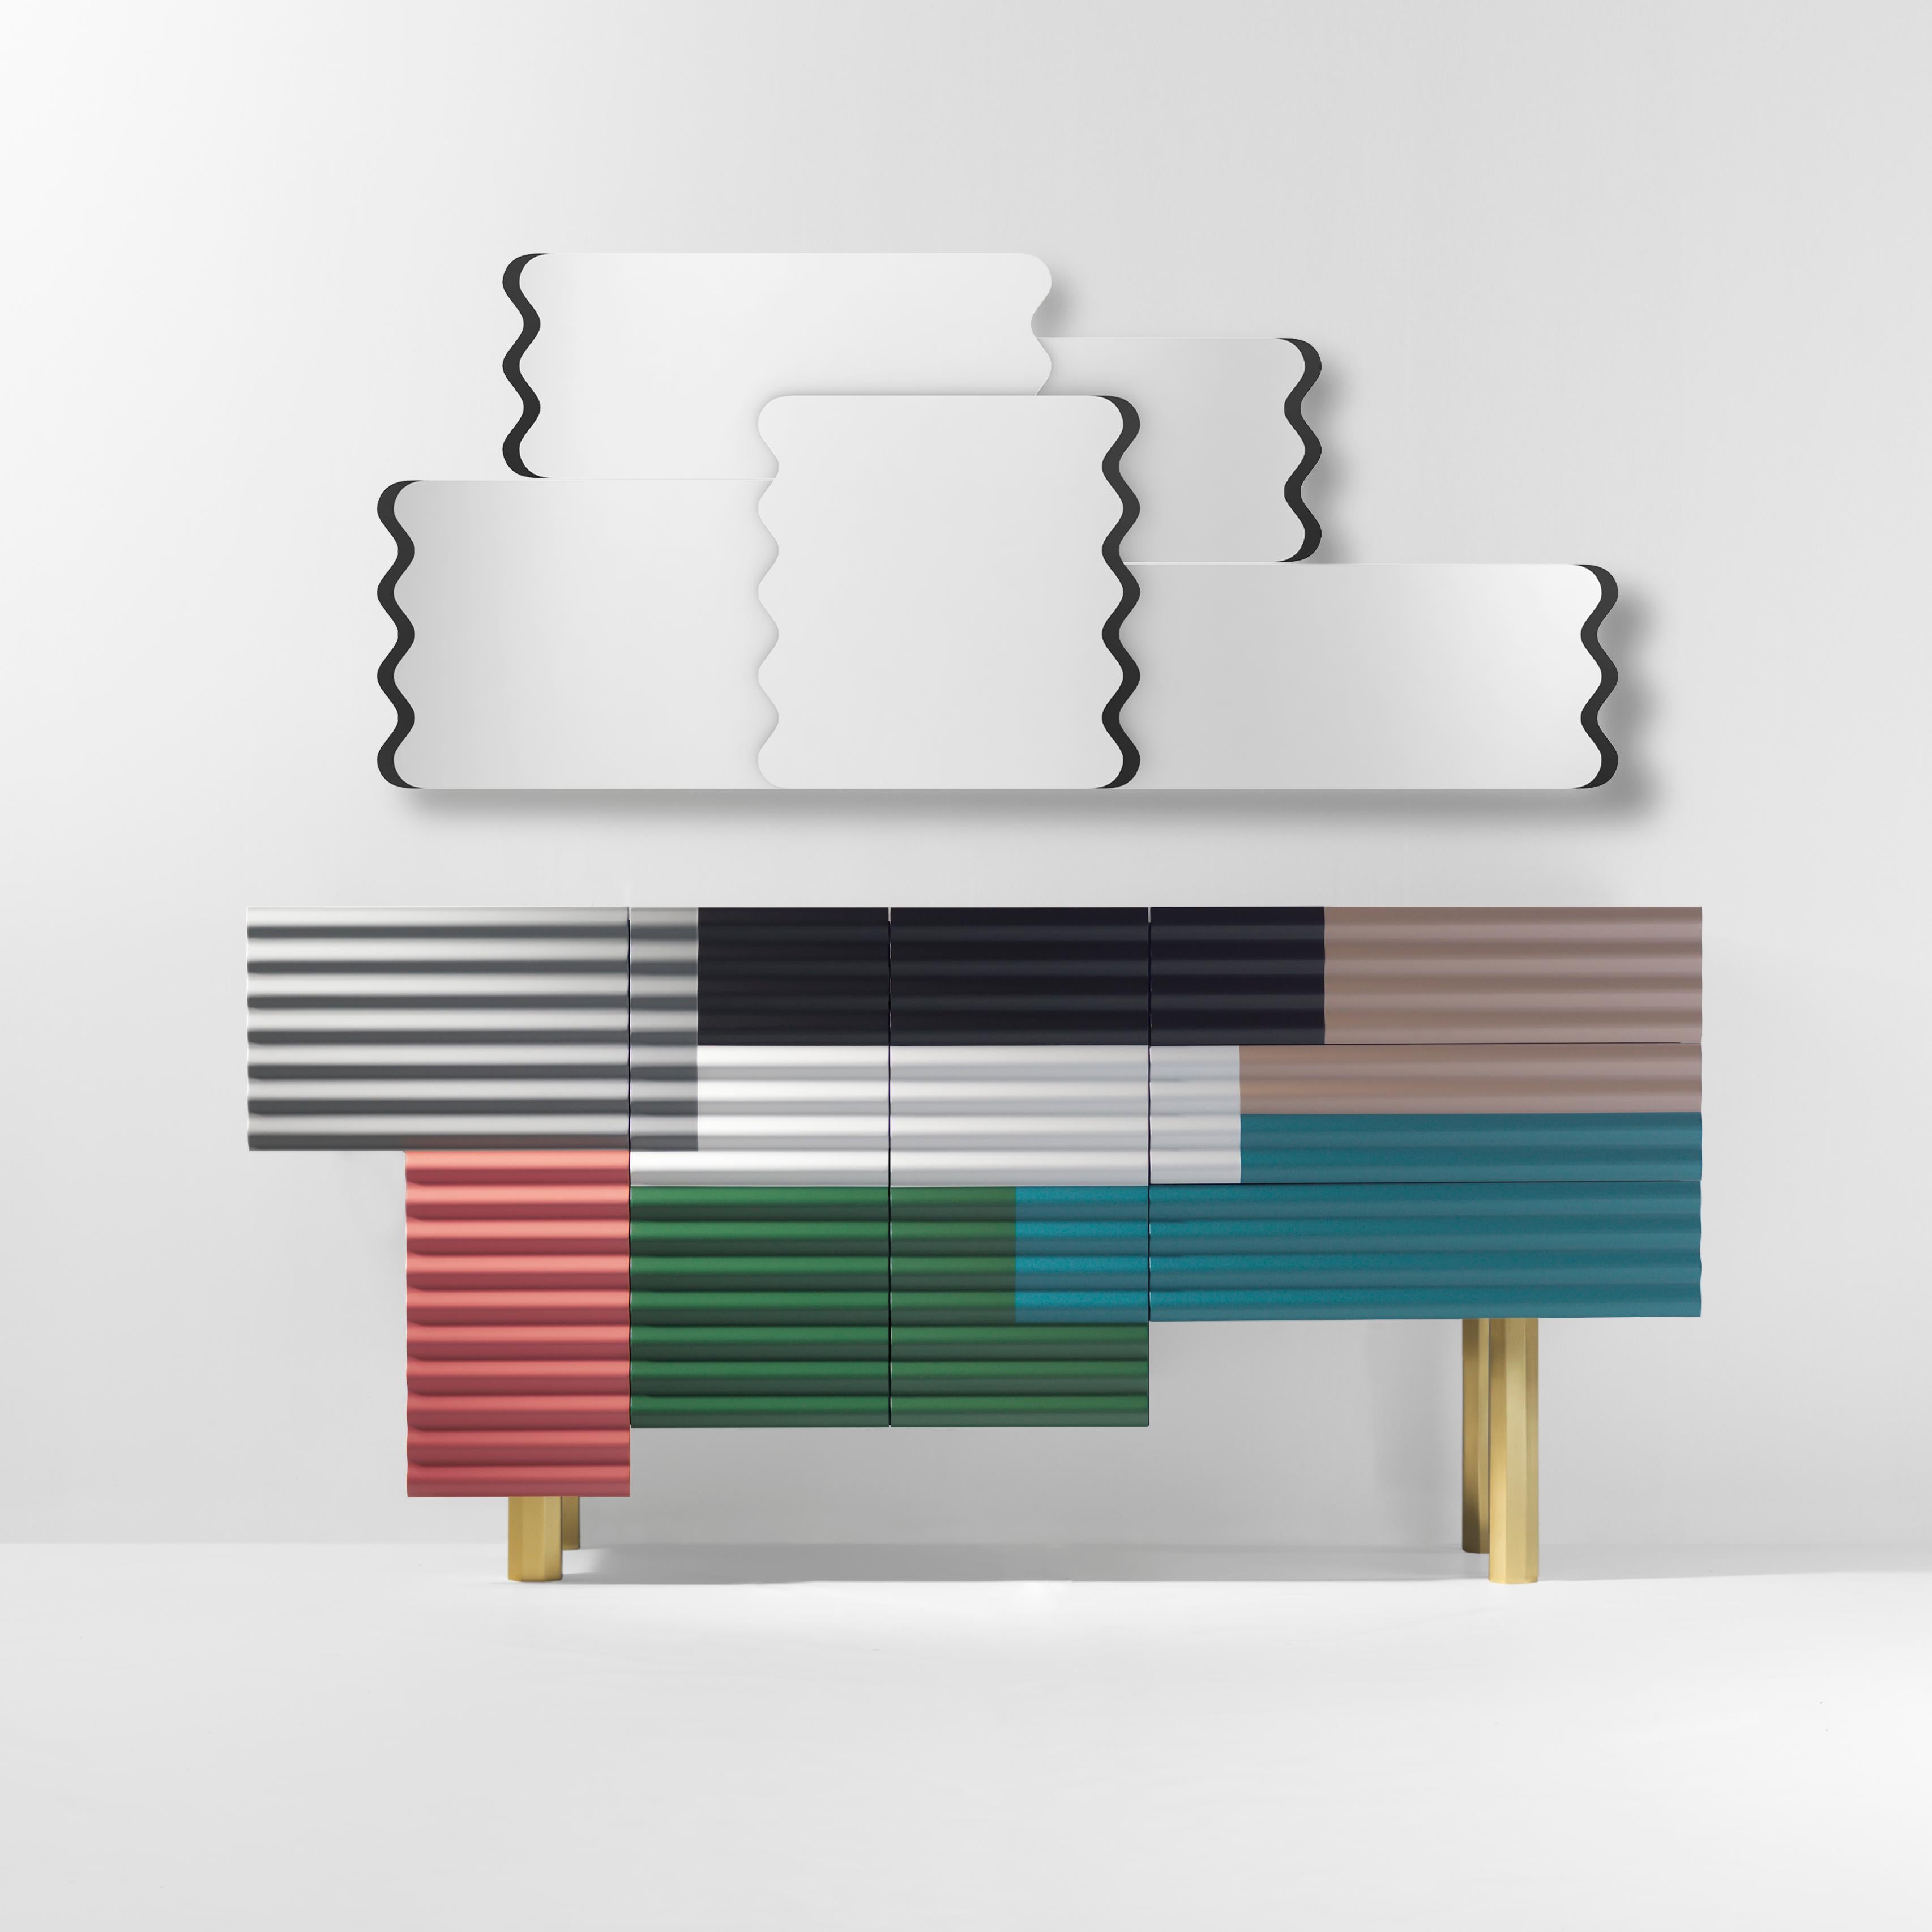 Armoire Shanty conçue par Doshi Levien en 2014 fabriquée à Barcelone par BD.

Shanty s'inspire du patchwork de tôles ondulées utilisé pour construire de nombreux logements temporaires ou provisoires dans le monde entier. Sa beauté réside dans